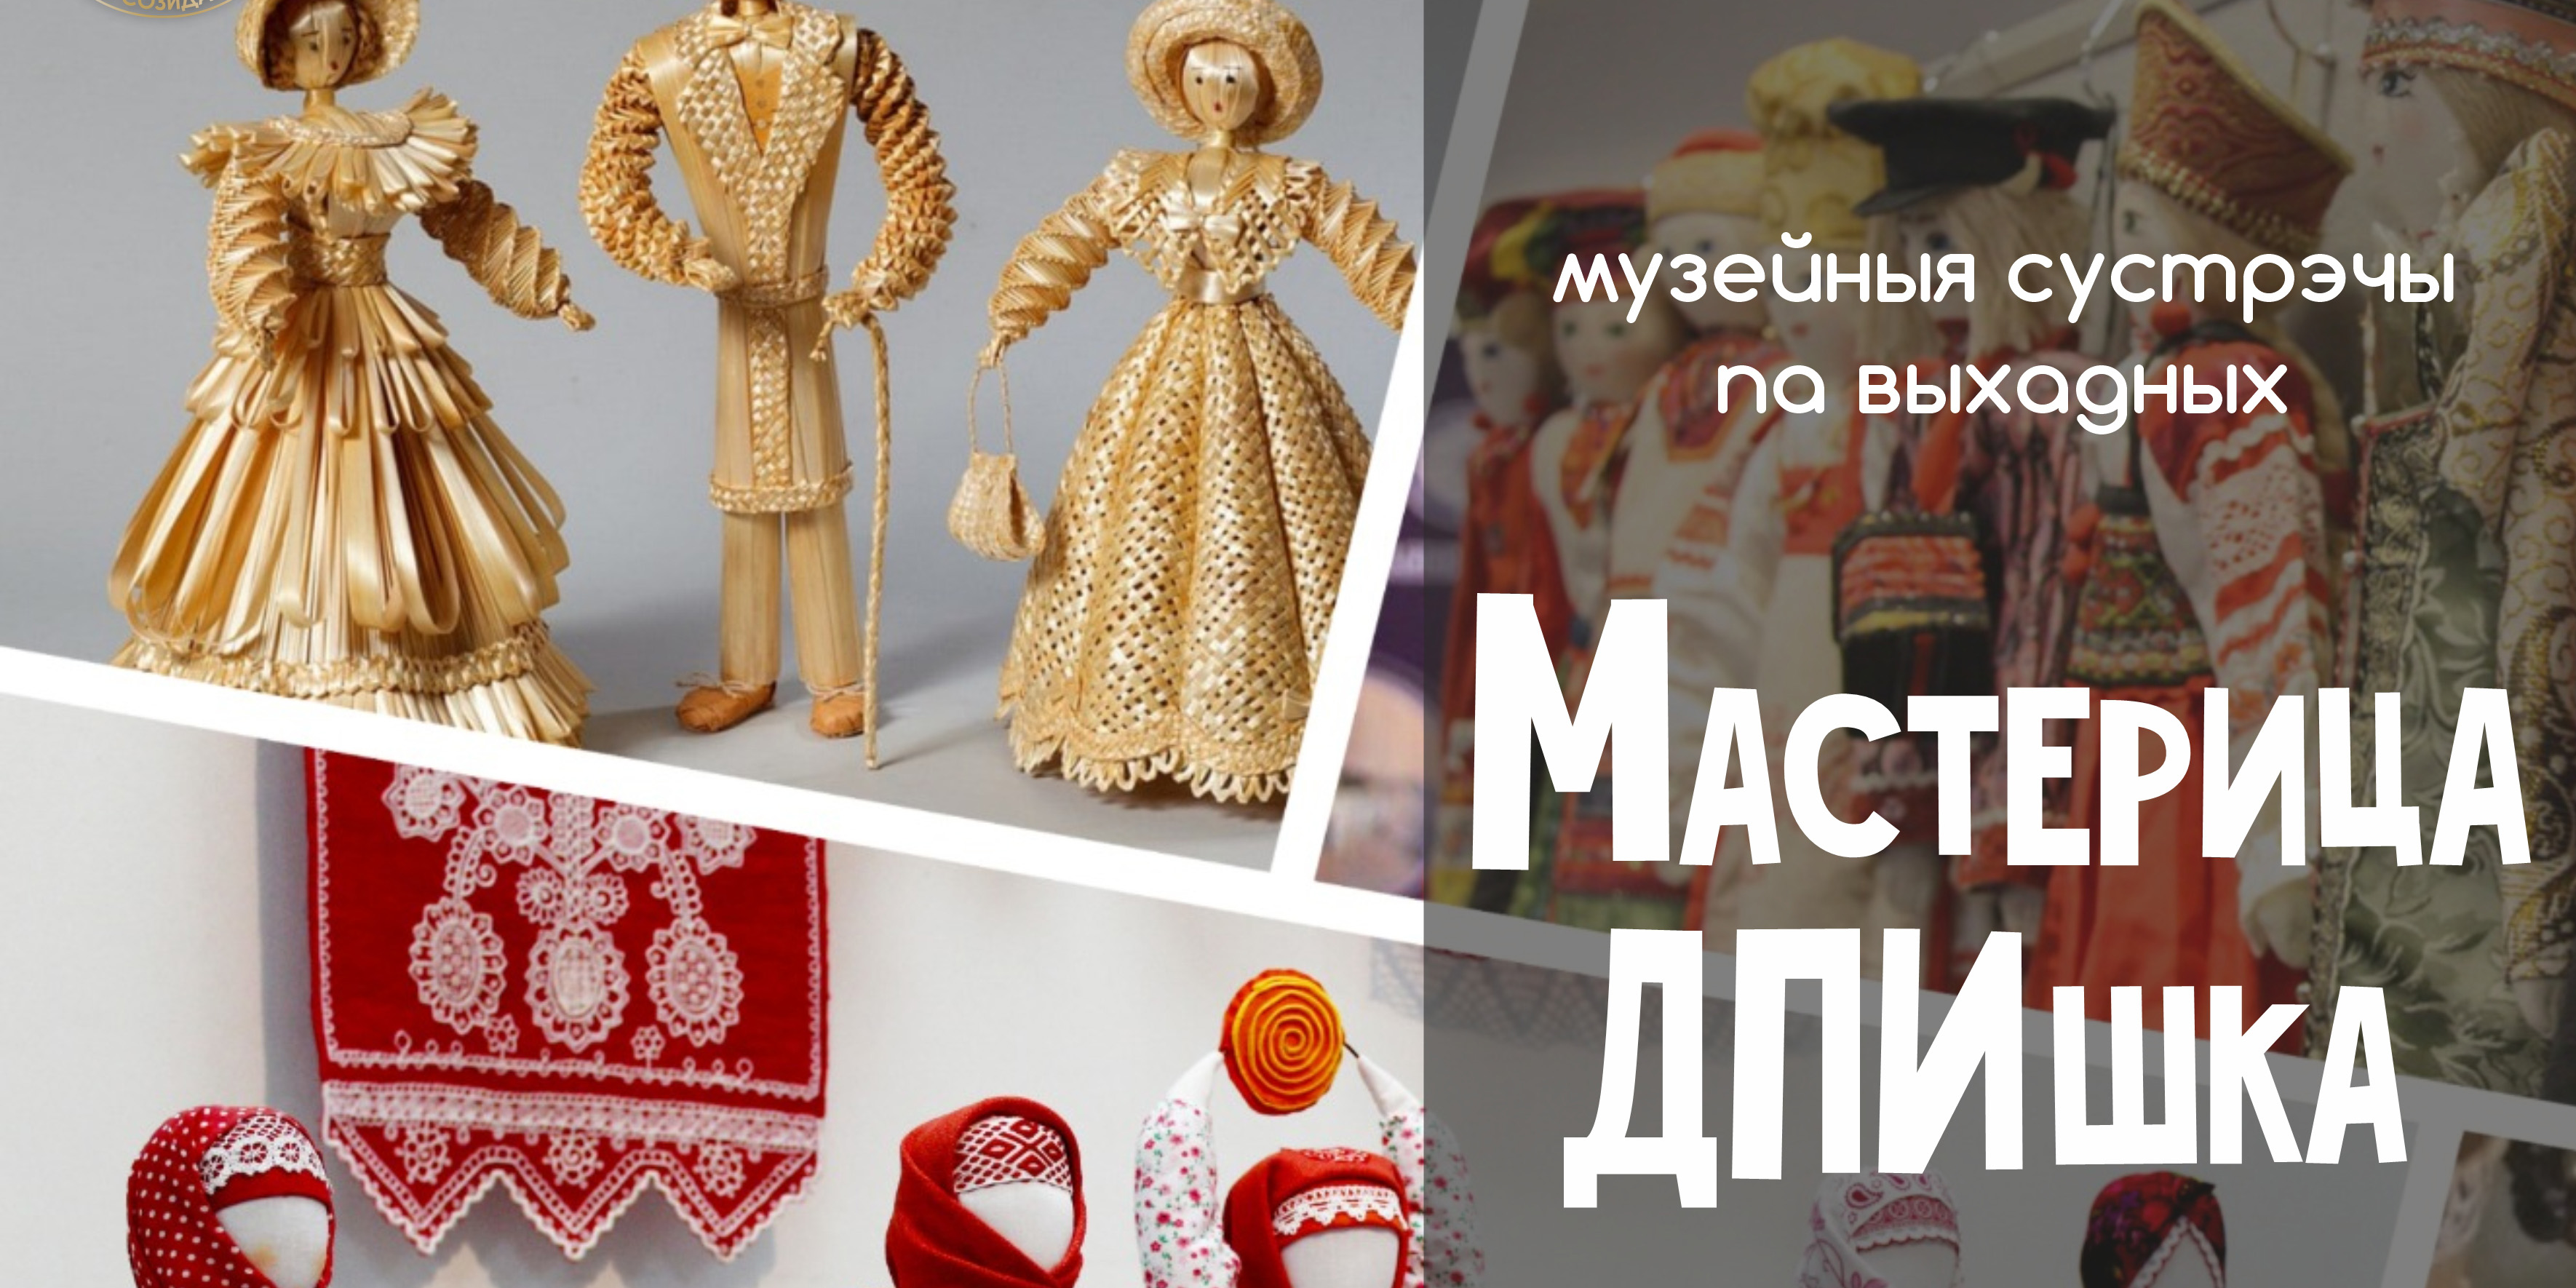 Могилевчан в выходные приглашают в музей на интерактивное занятие и экскурсию-лекцию